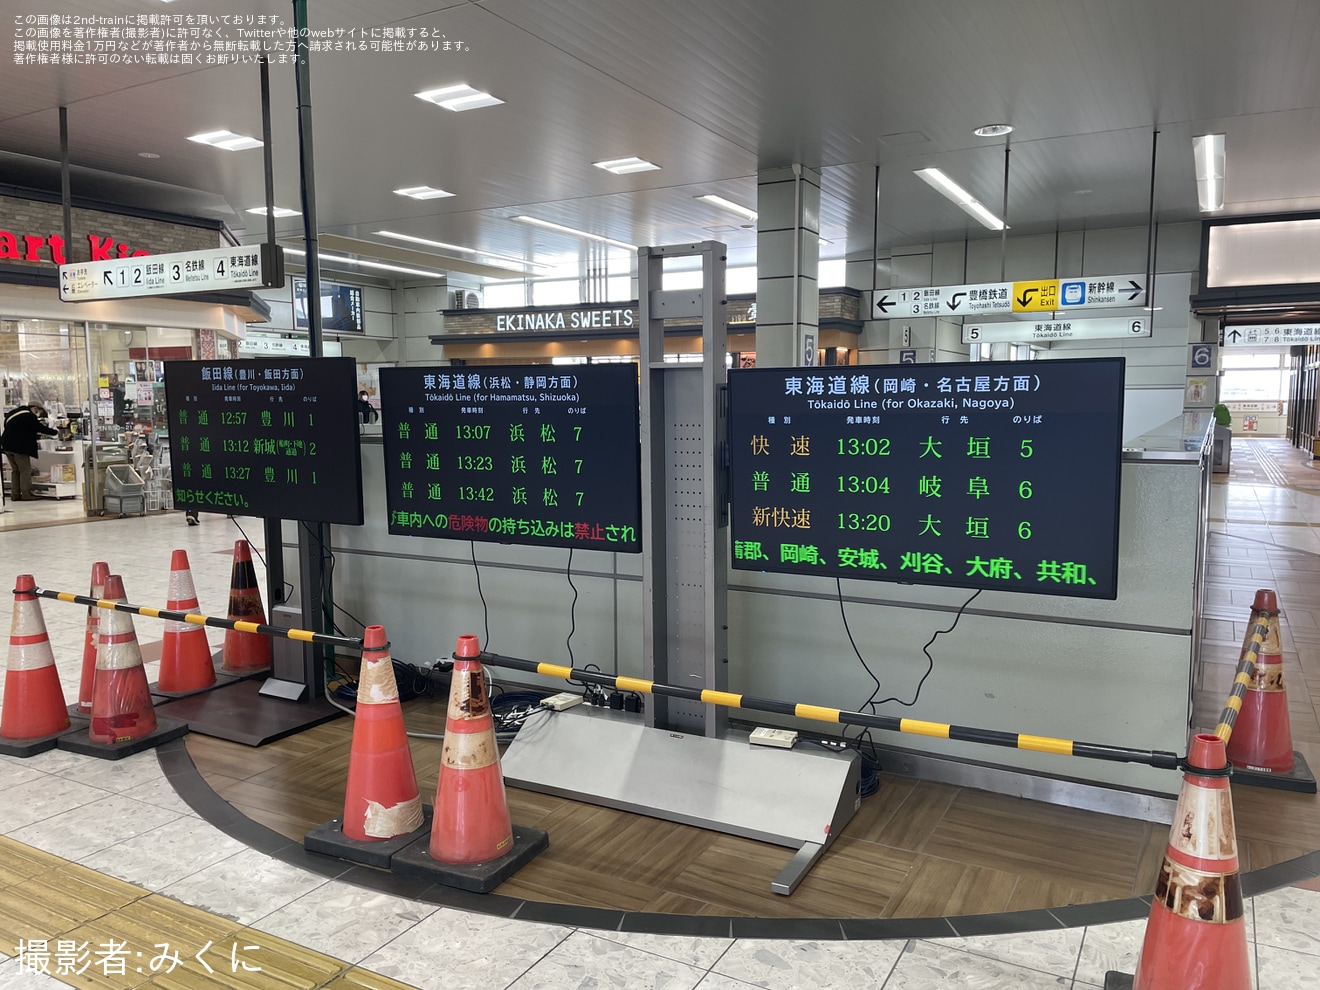 【JR海】豊橋駅の電光掲示板が使用停止となり床置きのLCDにの拡大写真